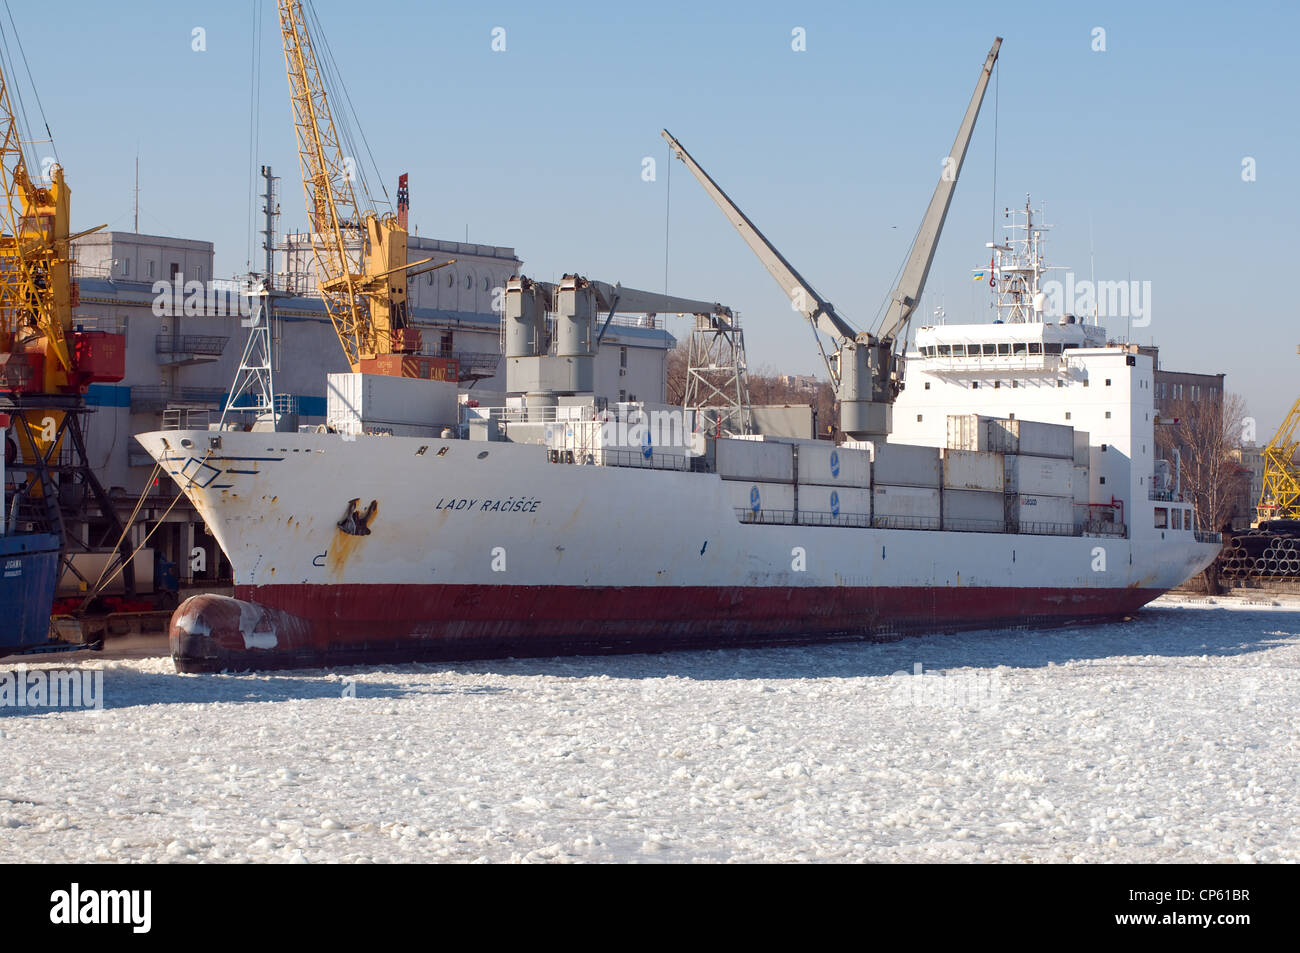 El puerto de Odessa es bloqueado por hielo, congelados del Mar Negro, un fenómeno raro, la última vez que ocurrió en 1977, Odesa, Ucrania Foto de stock